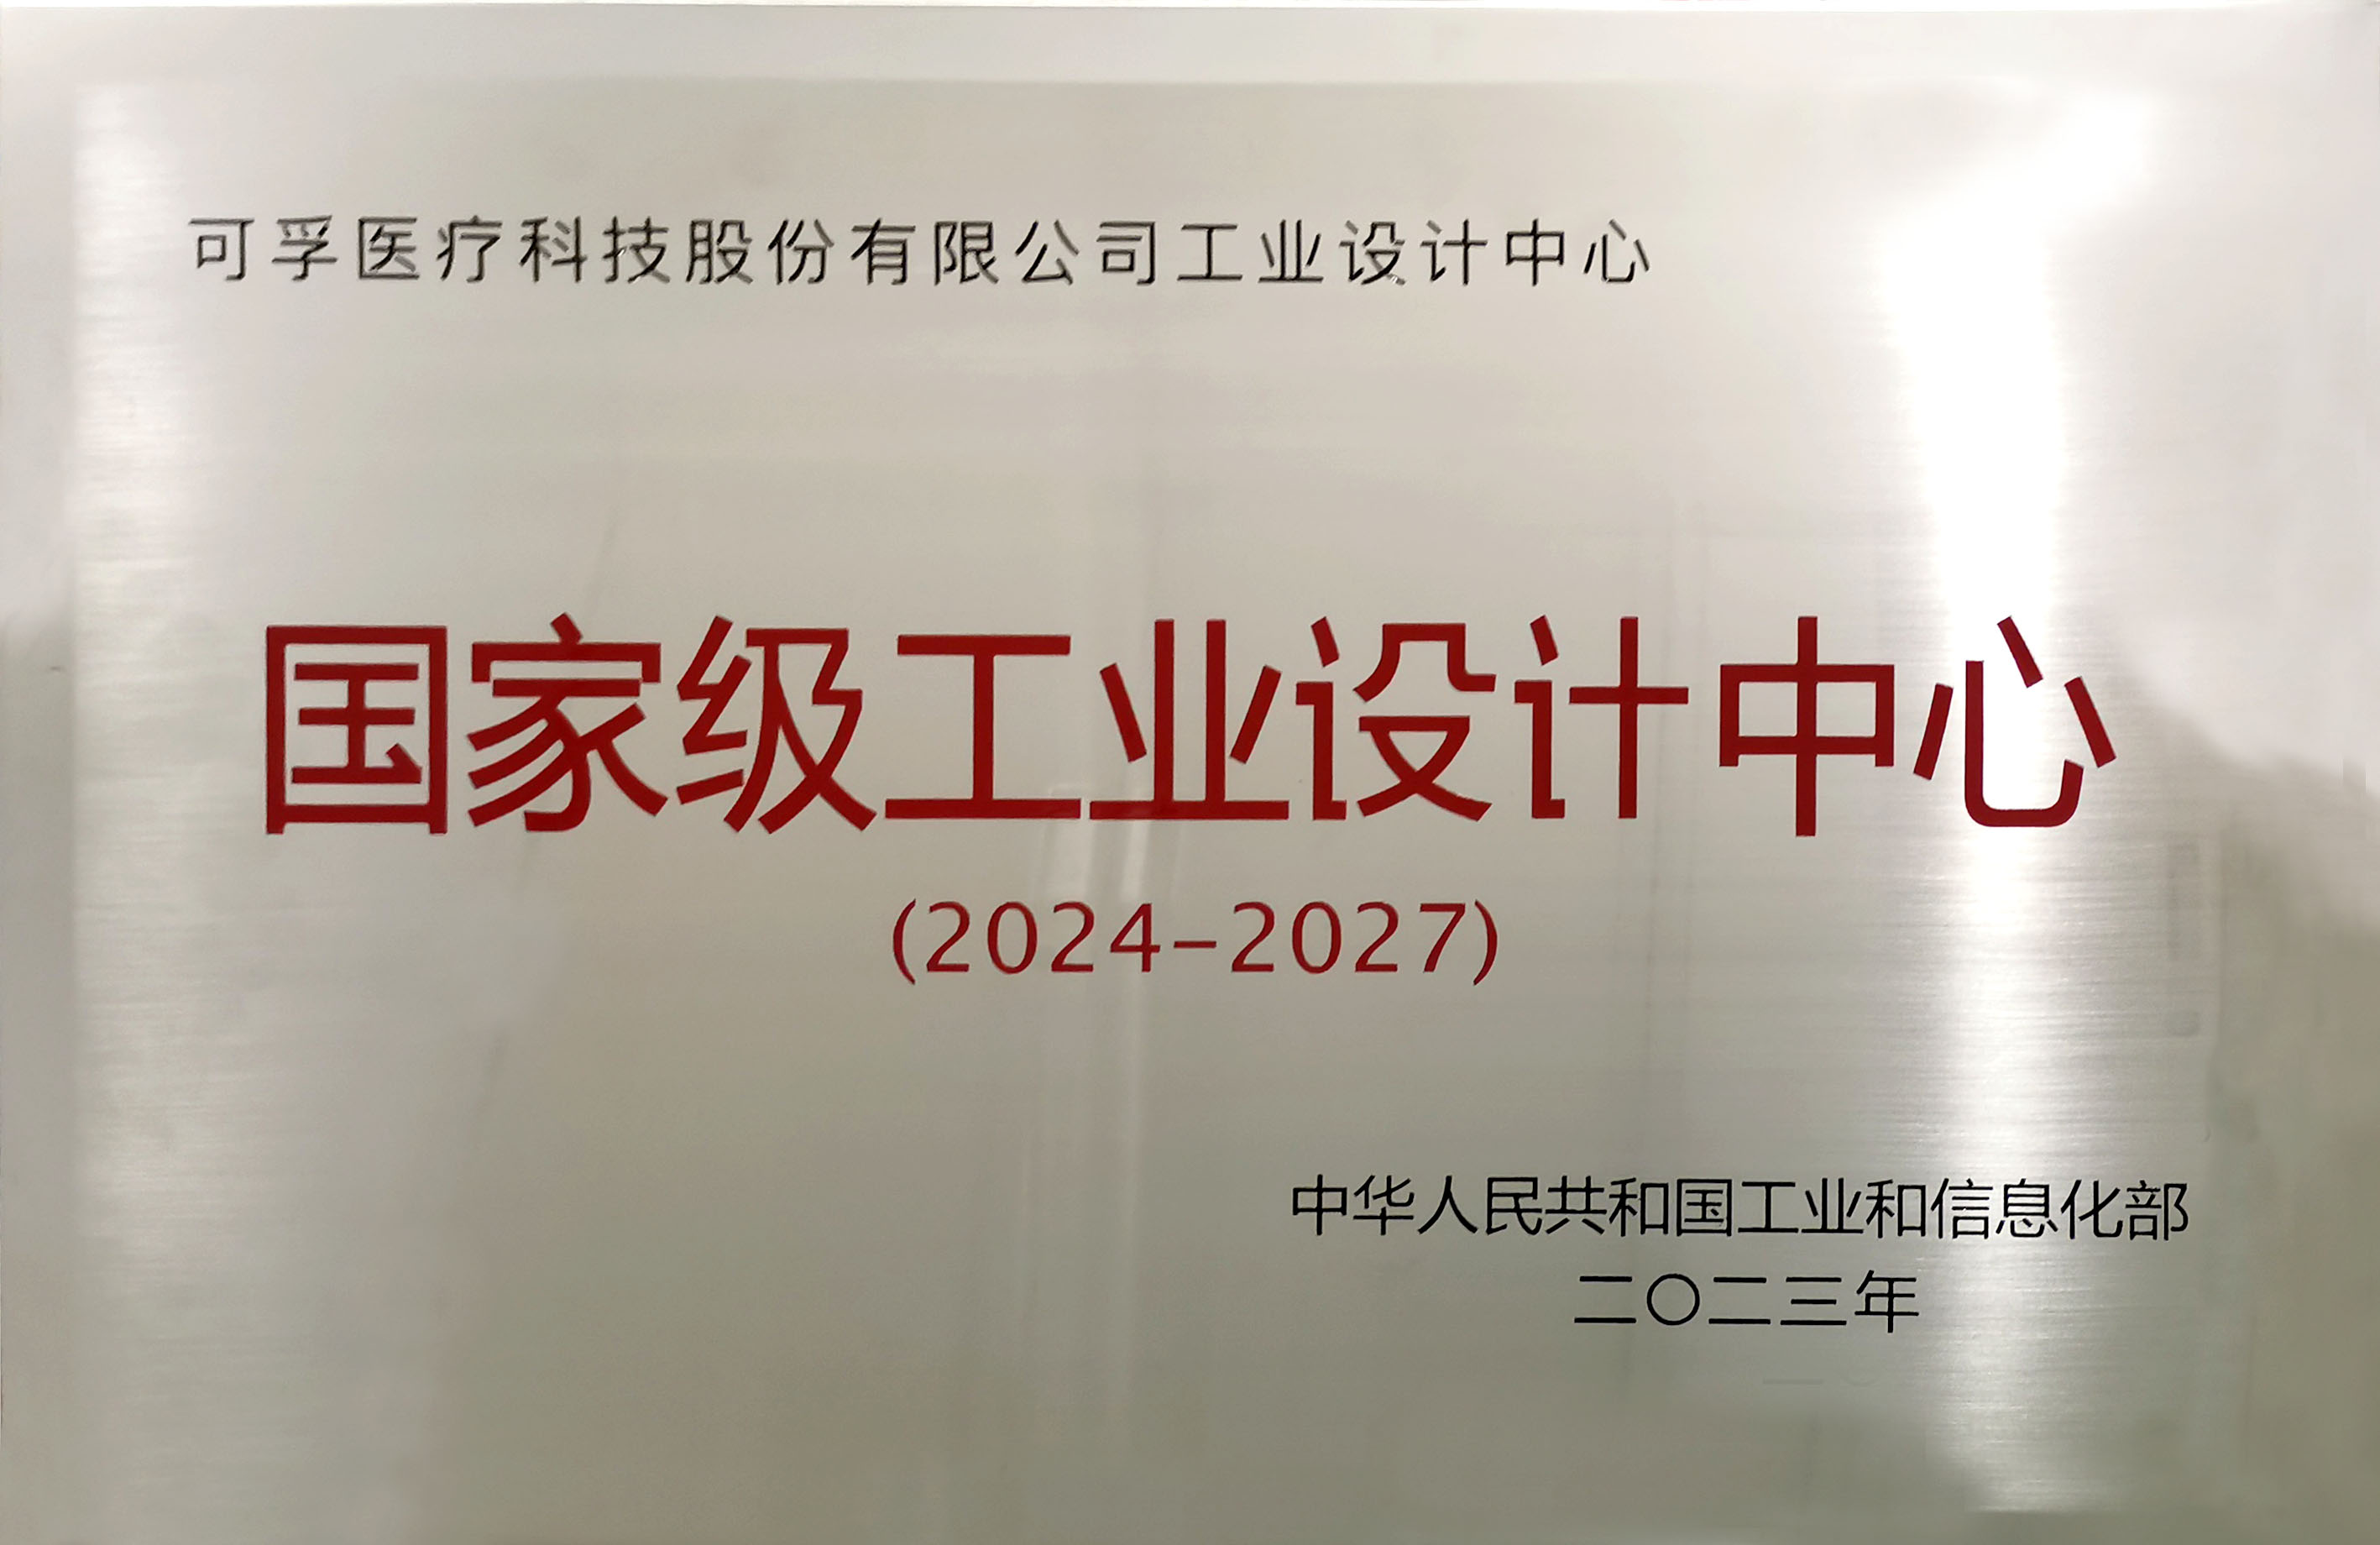 新莆京8883net被授予“国家级工业设计中心”